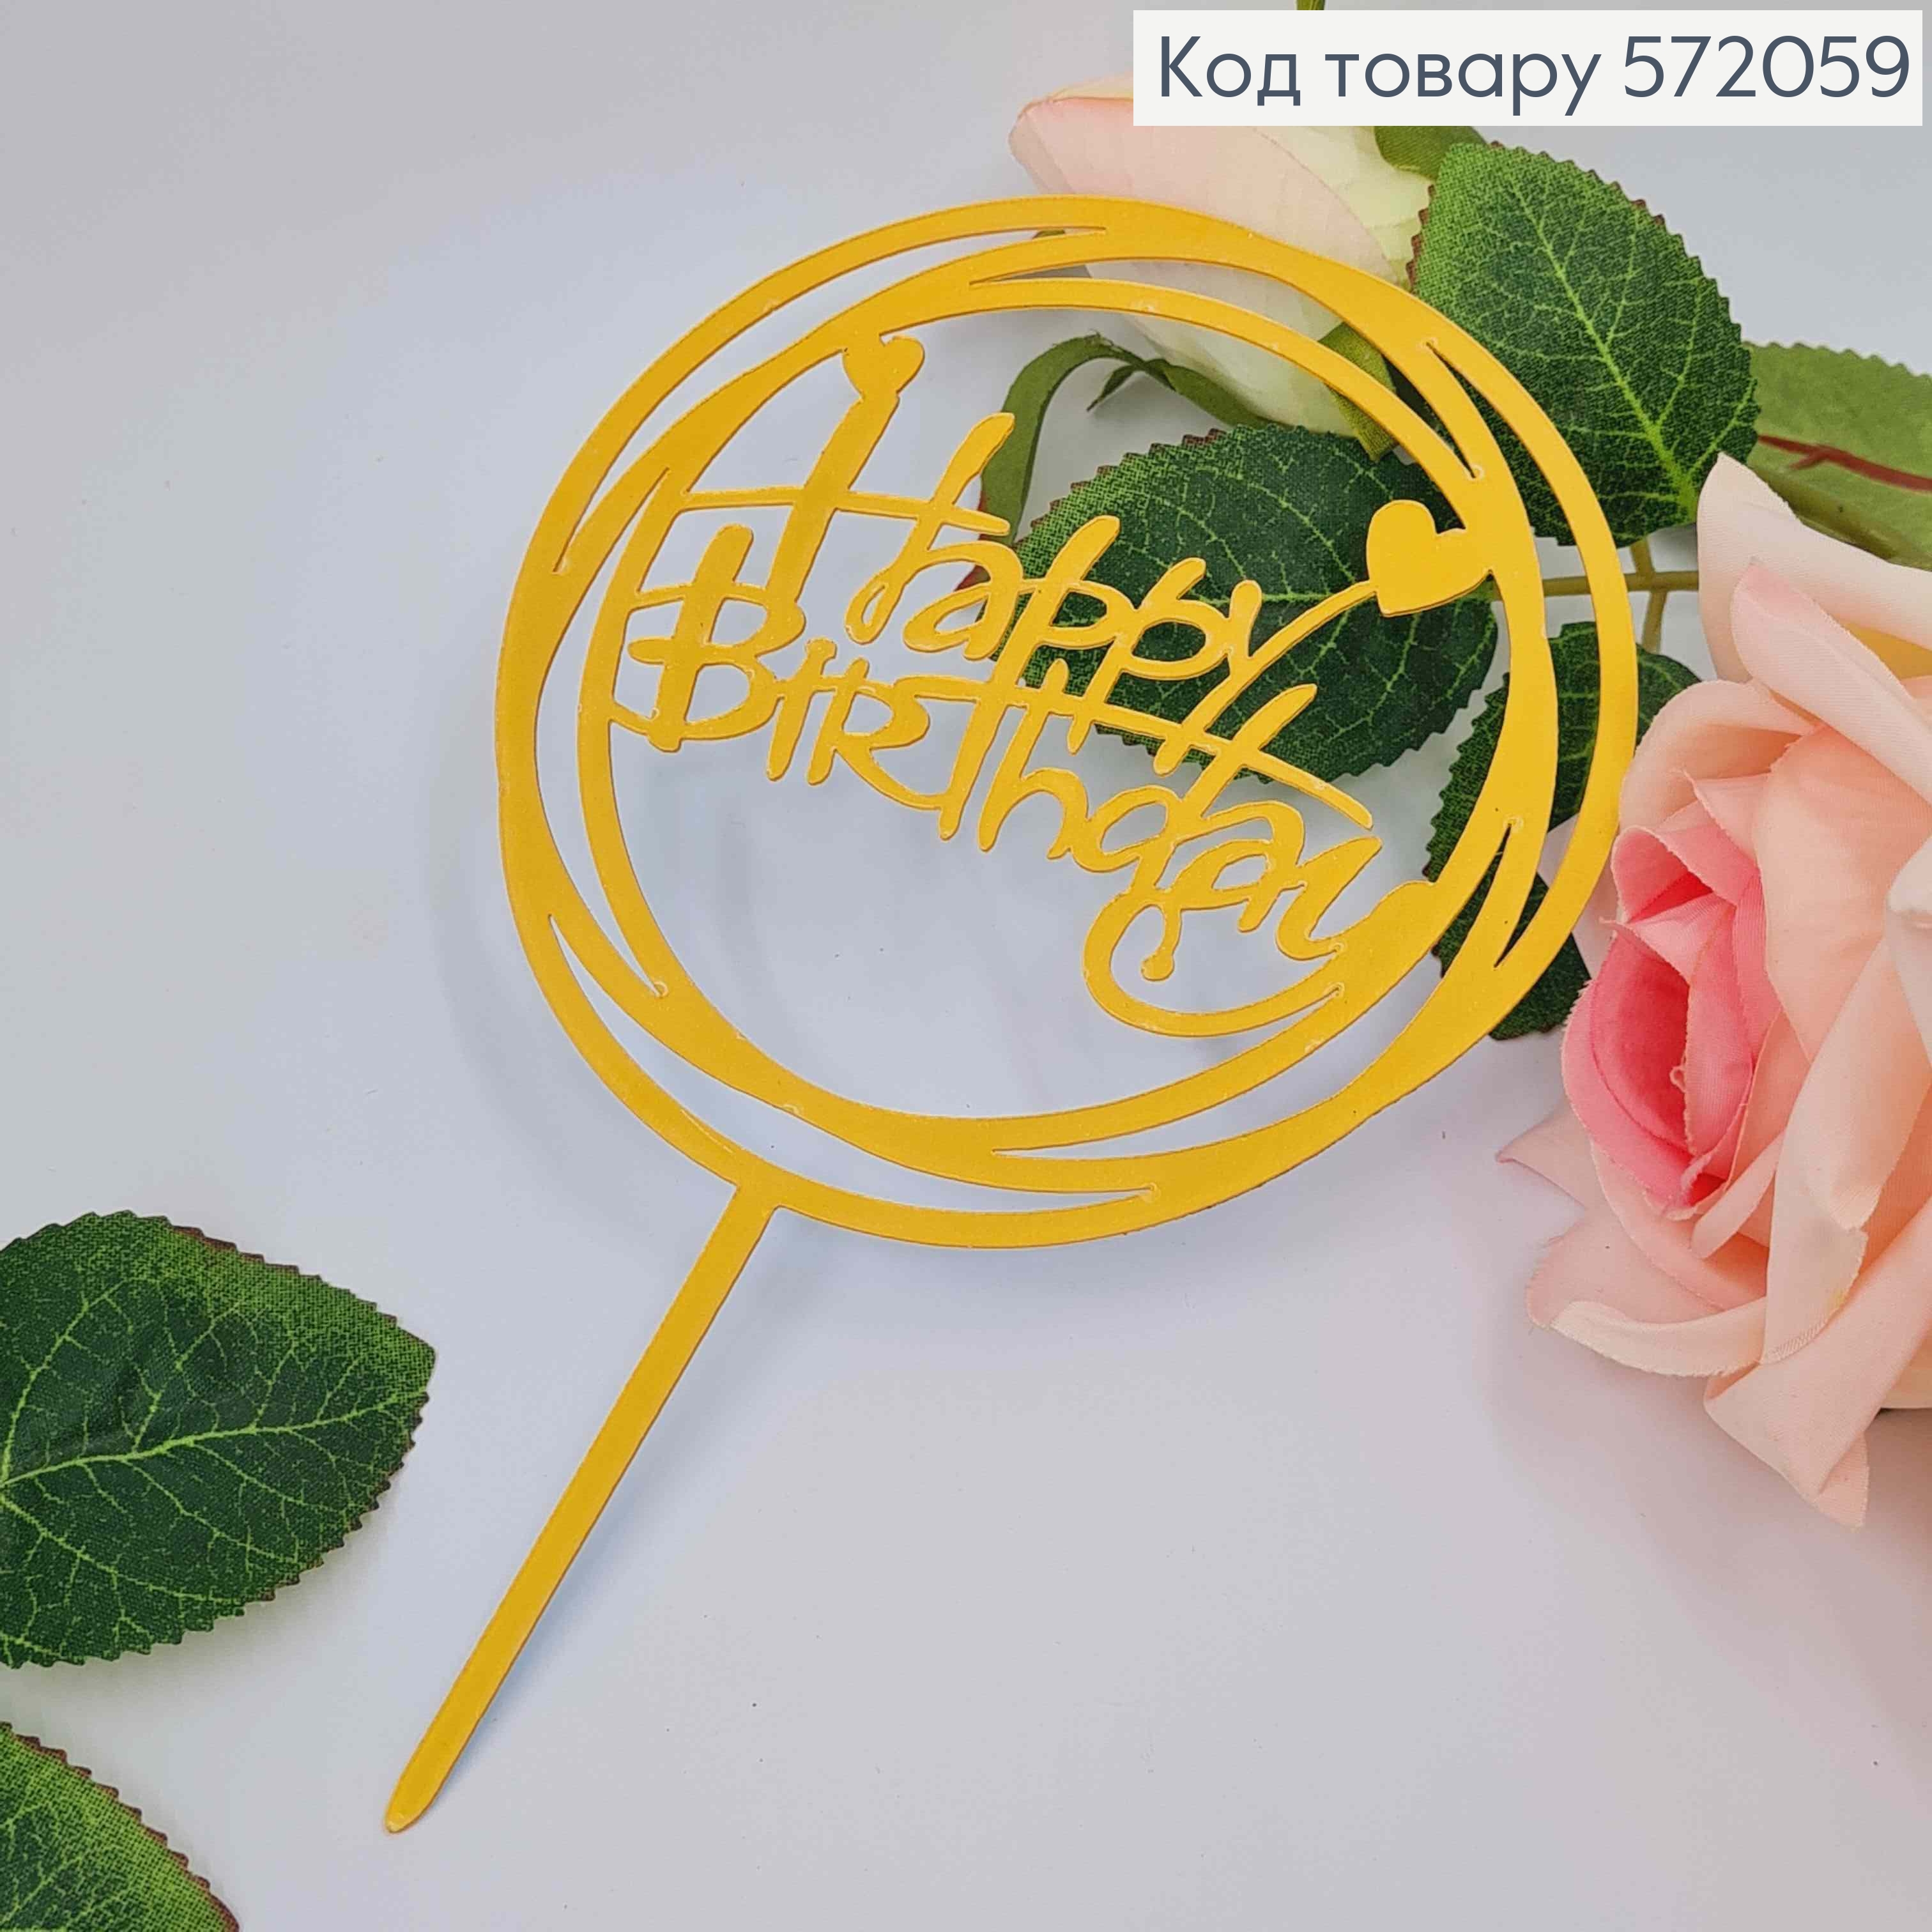 Топпер пластиковий, "Happy Birthday", Золотого кольору, на дзеркальній основі, в колі, 15см 572059 фото 3